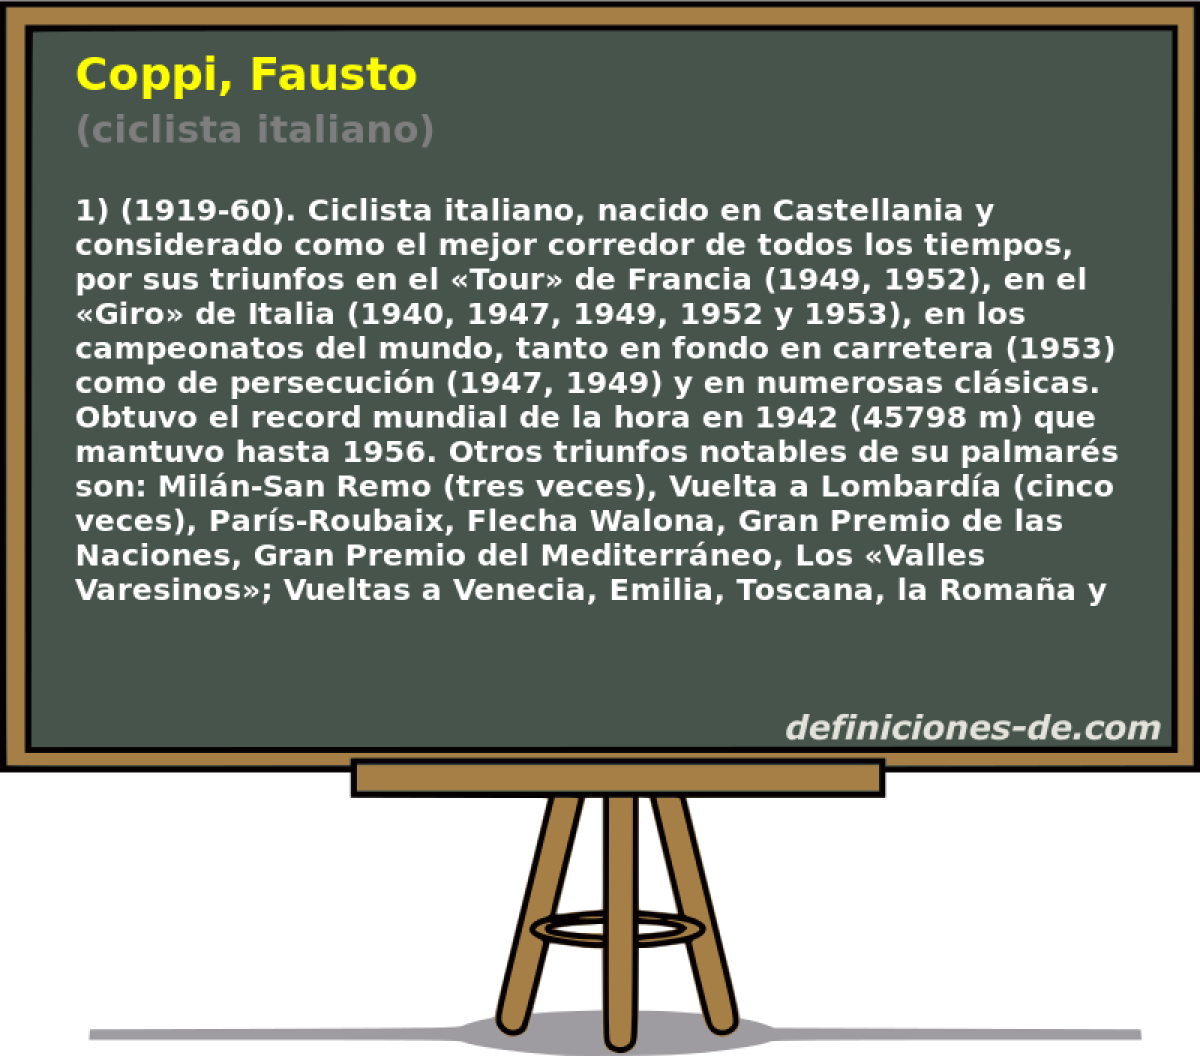 Coppi, Fausto (ciclista italiano)